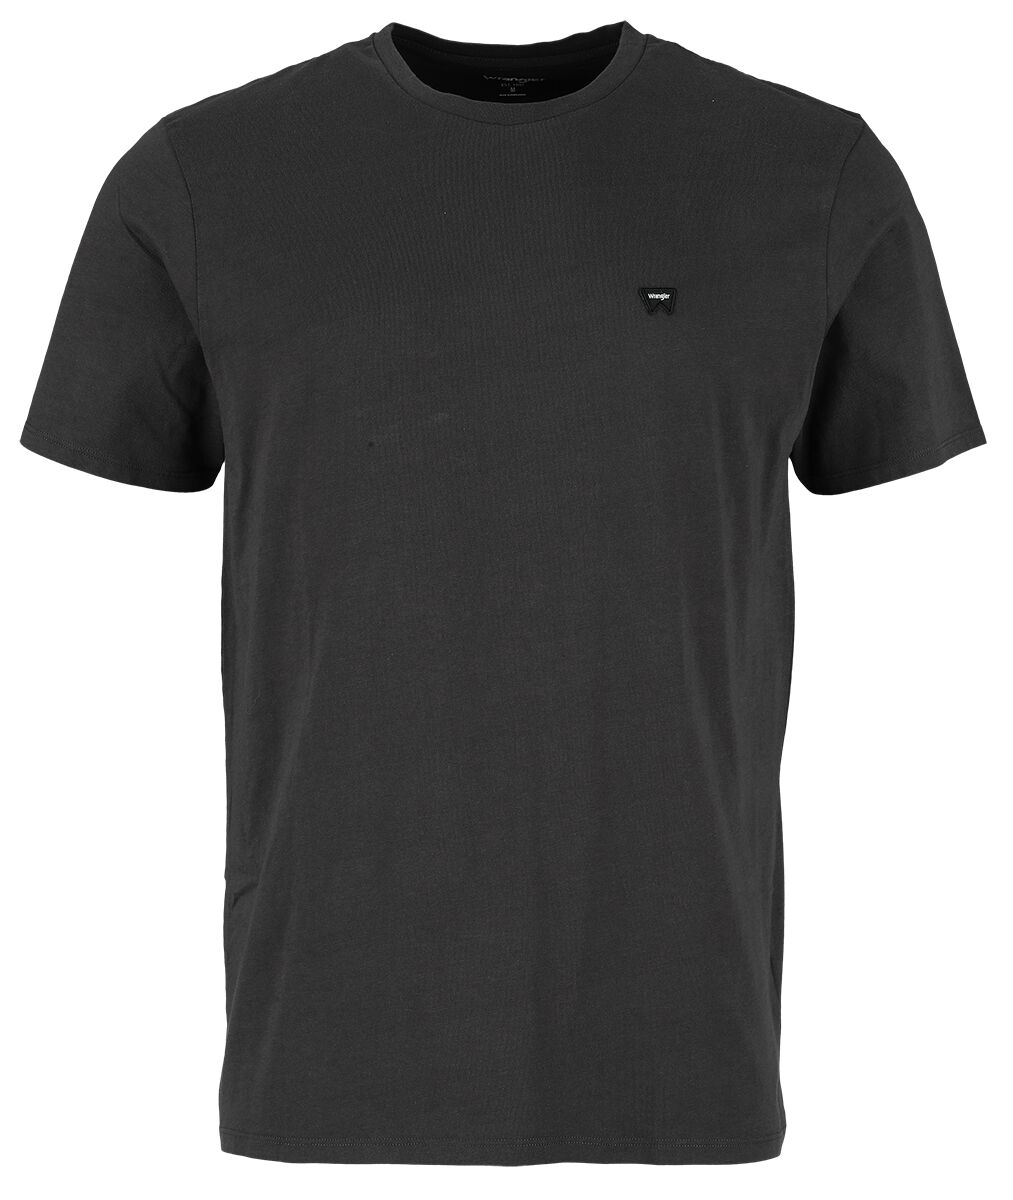 Wrangler T-Shirt - Sign Off Tee Faded Black - S bis XXL - für Männer - Größe L - schwarz